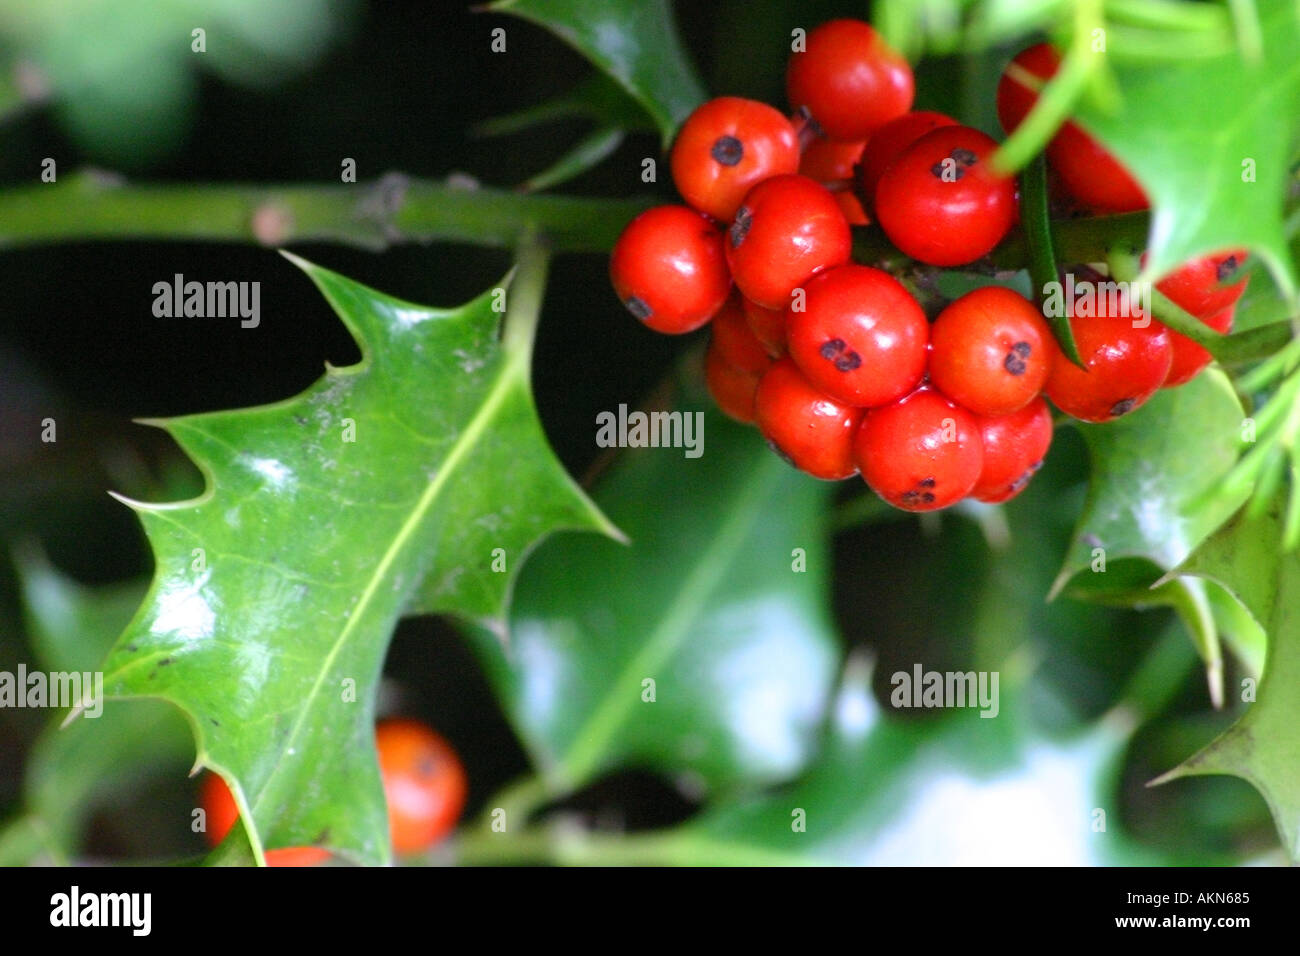 Weihnachtsszene mit roten Beeren auf eine Stechpalme Bush Stechpalme  Weihnachten festlich Beere Beeren Schnee vergiften Pflanze Blätter Busch  Prickeln p Stockfotografie - Alamy